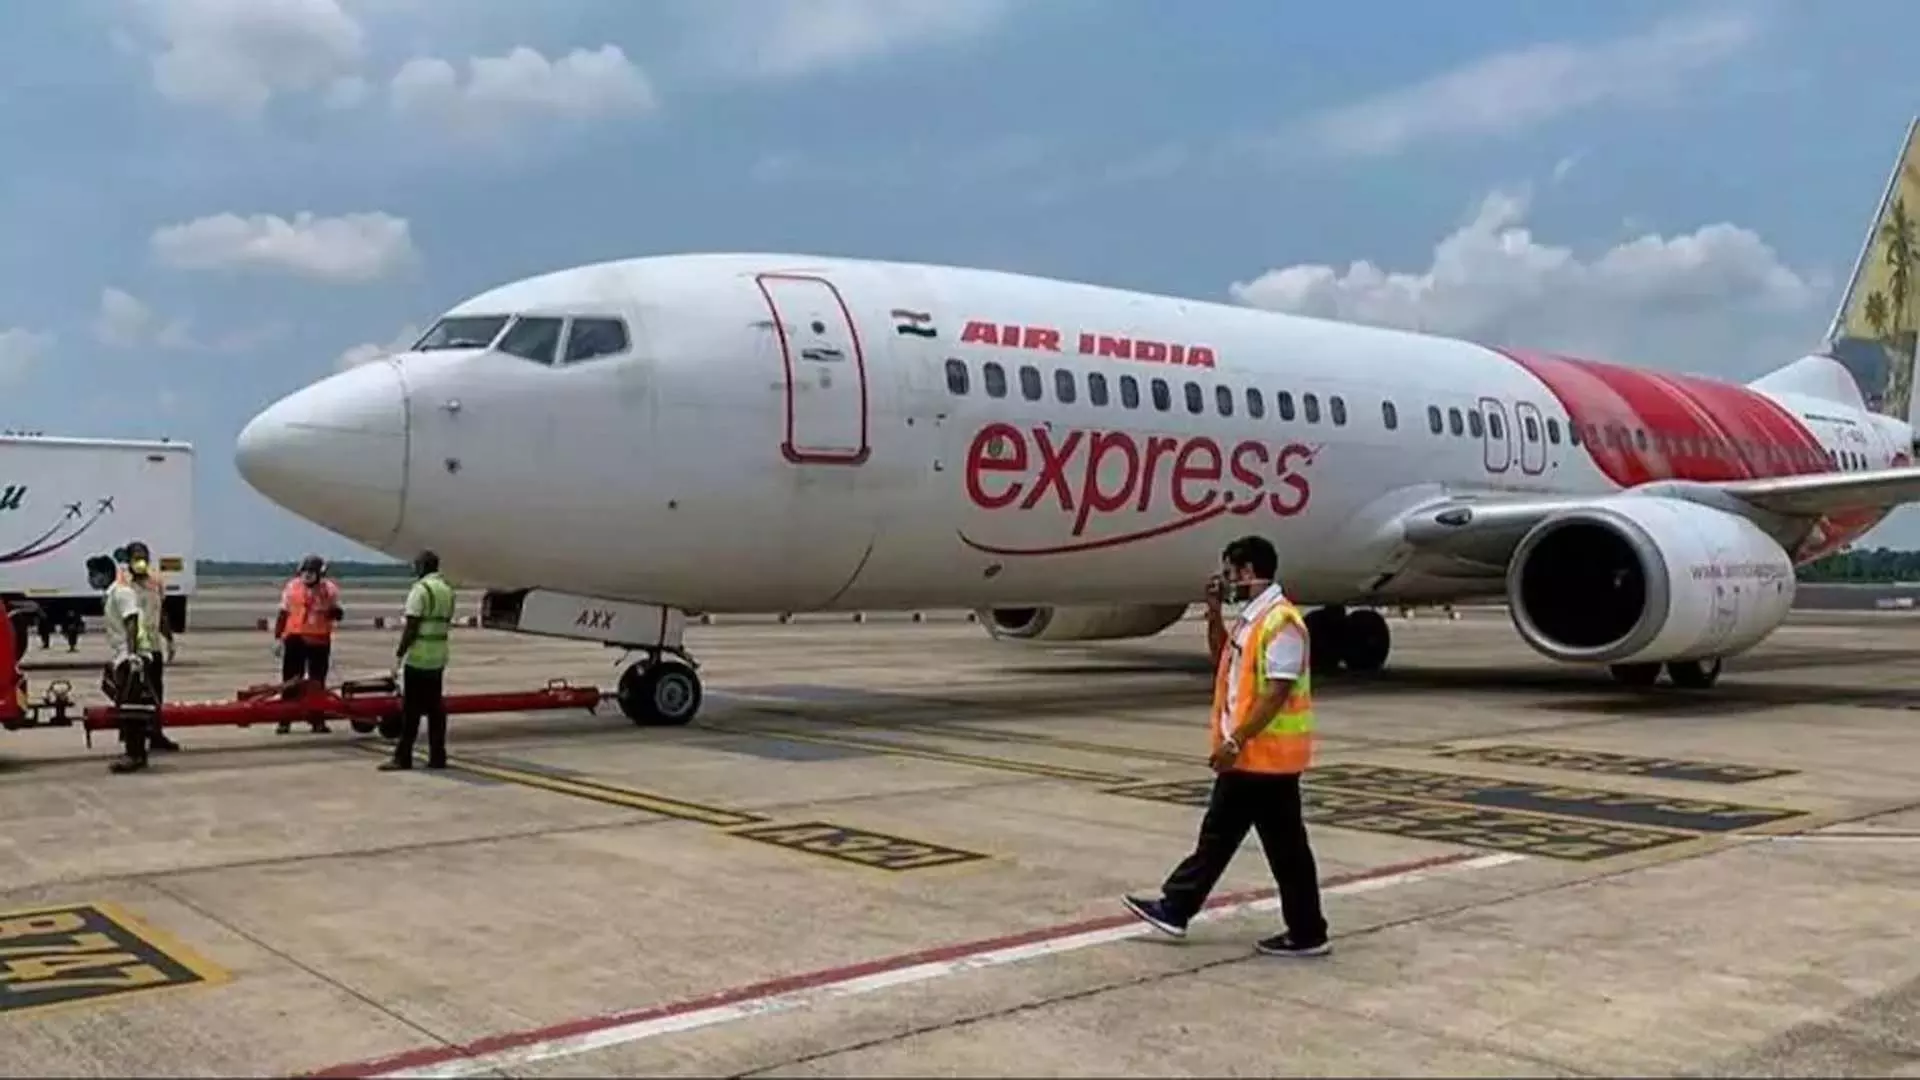 एयर इंडिया एक्सप्रेस नेटवर्क को स्थिर करते हुए धीरे-धीरे अपनी उड़ानें बहाल कर रही